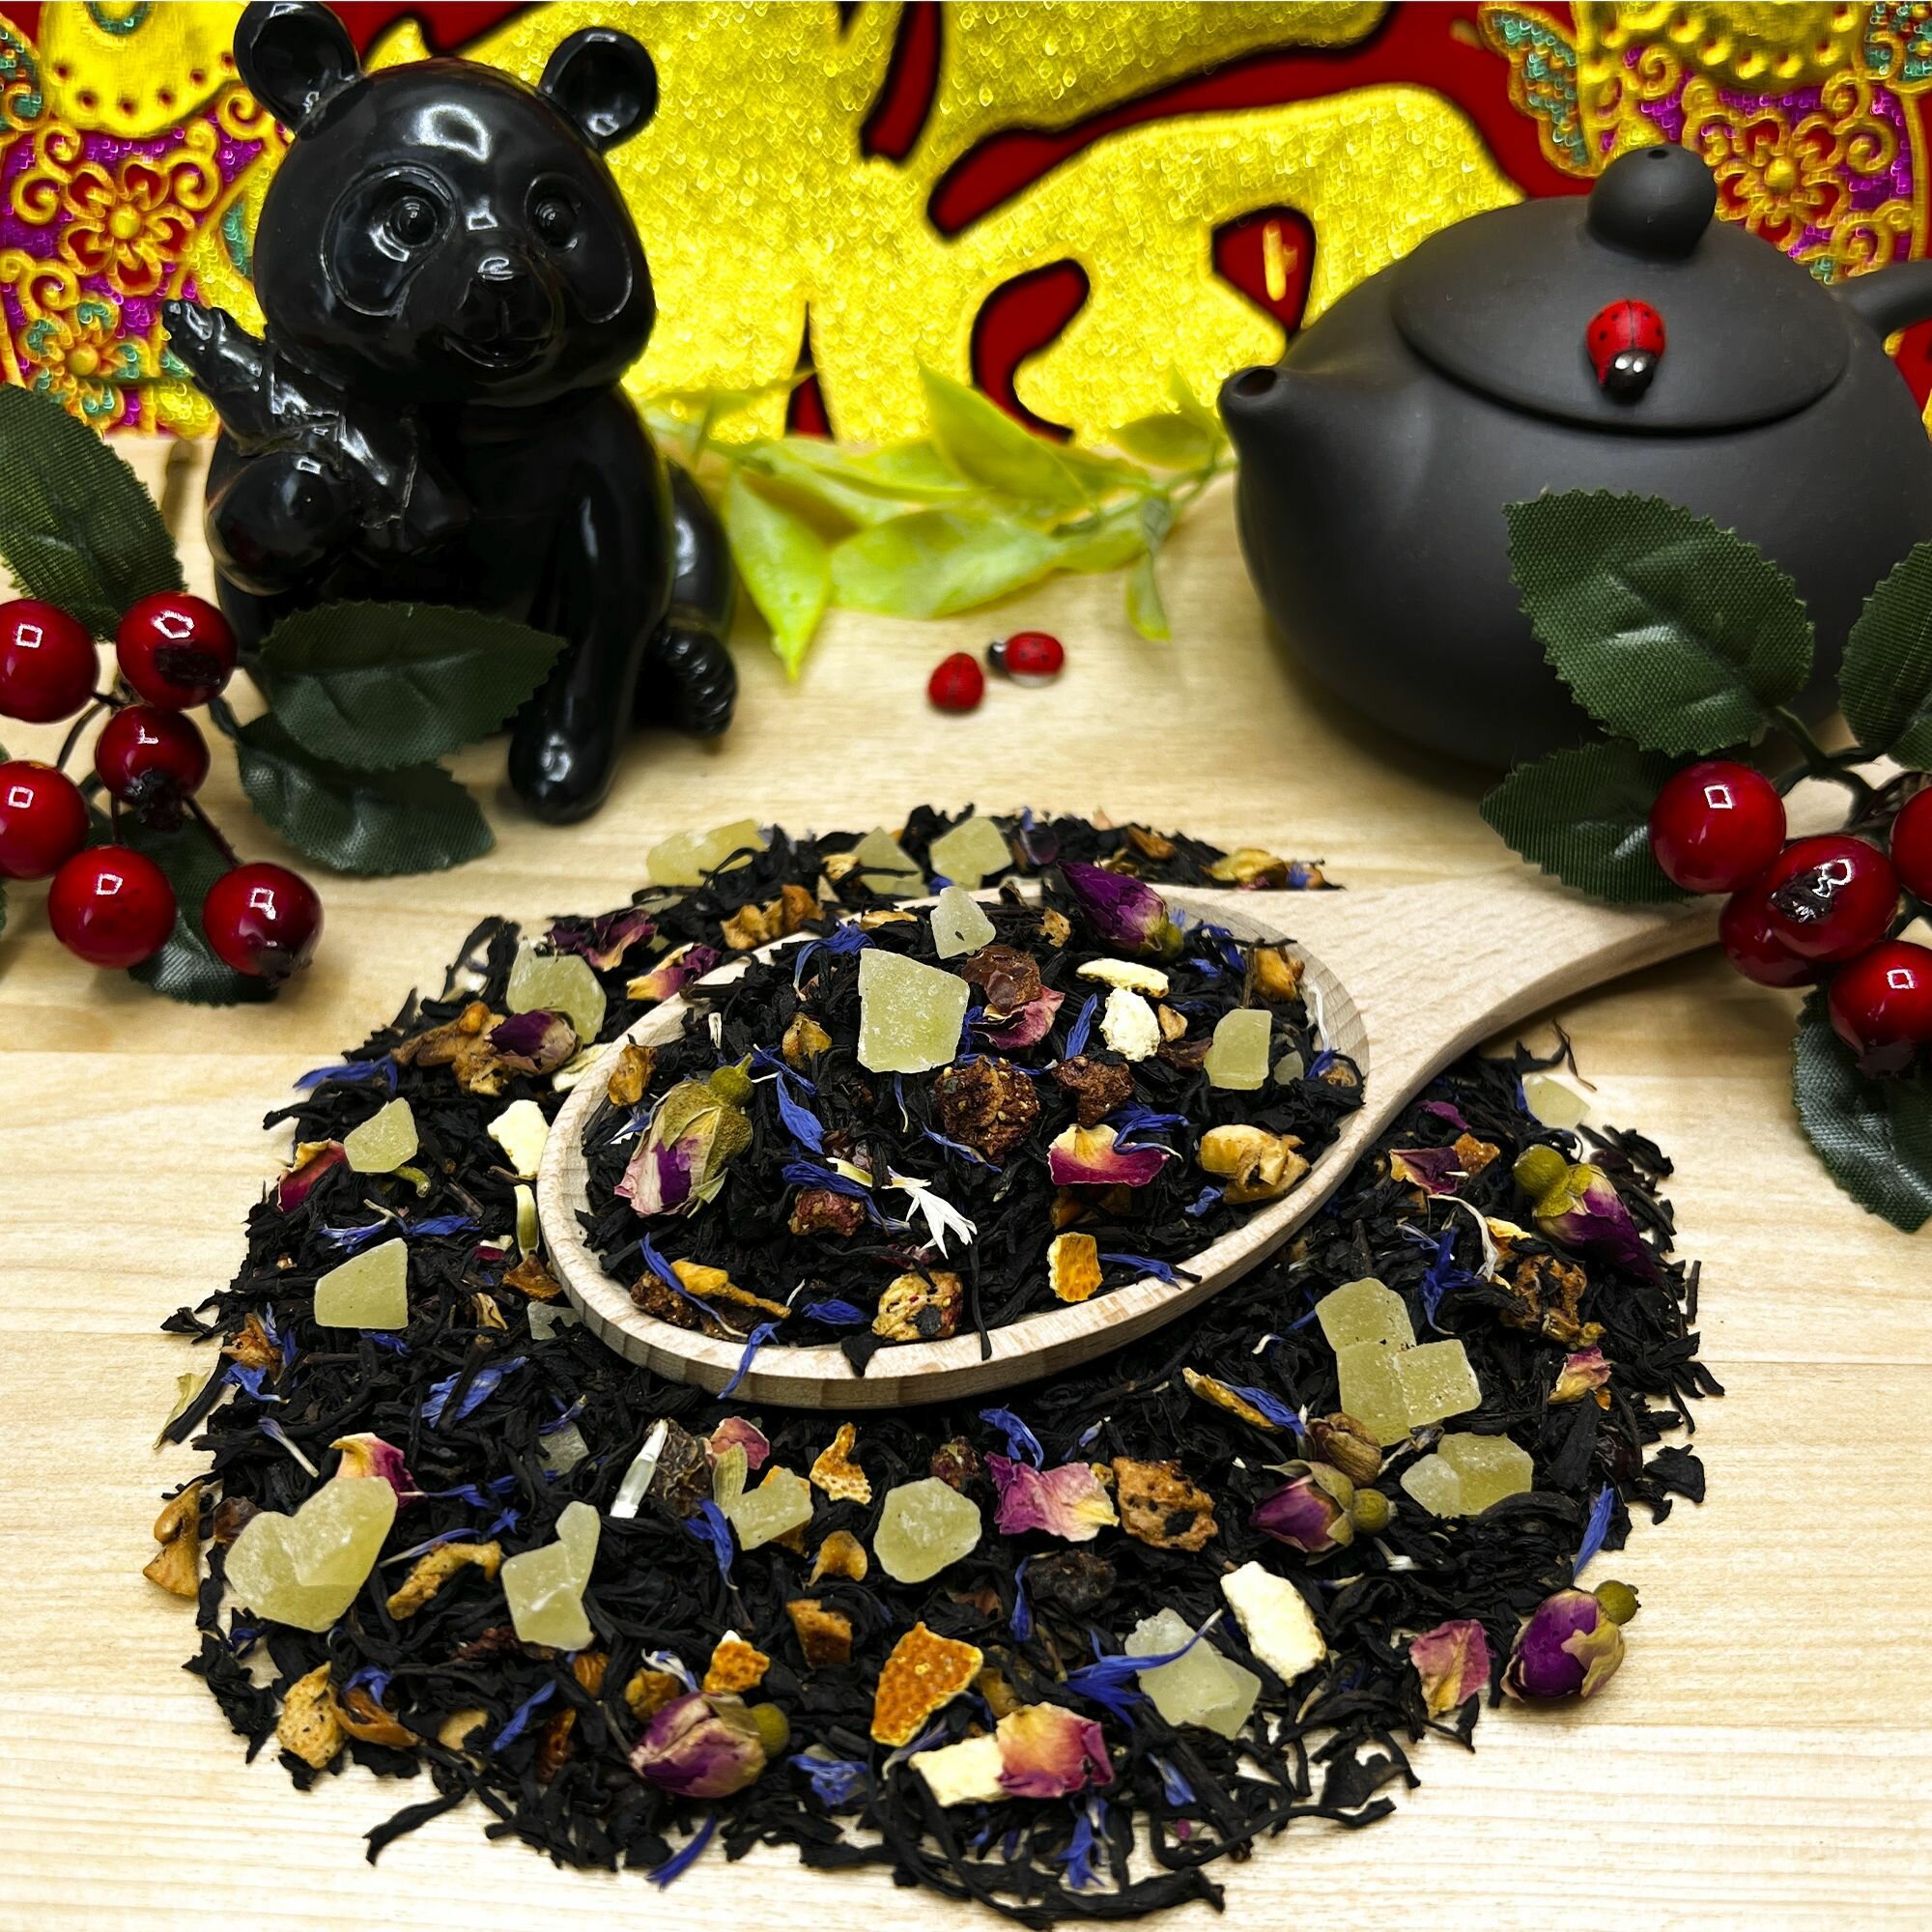 Индийский Черный чай с клубникой, шиповником и апельсином Достояние Петра Полезный чай / HEALTHY TEA, 50 гр